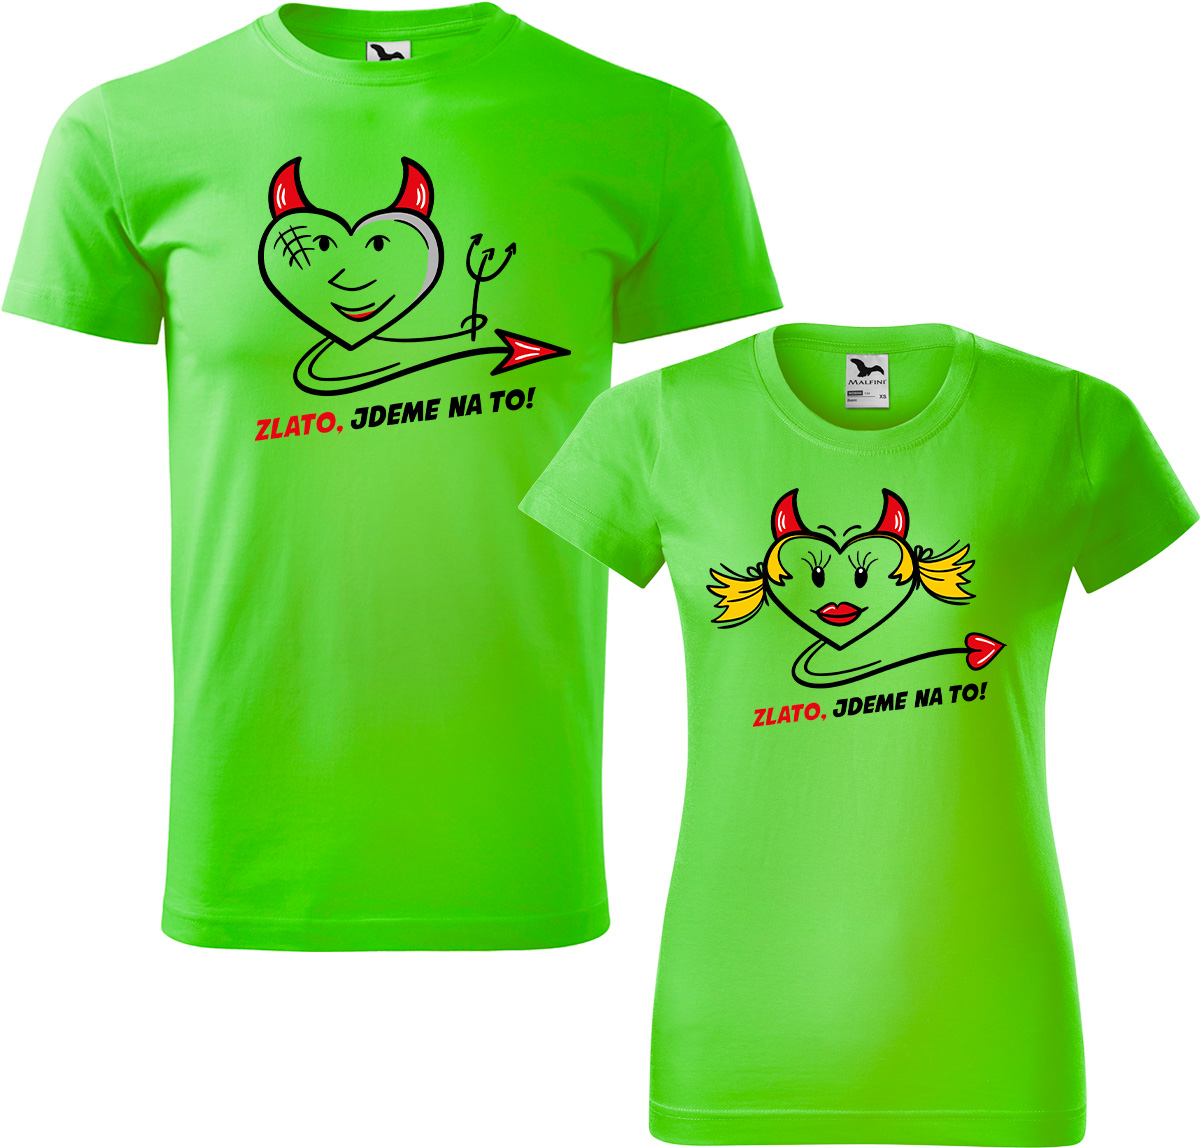 Trička pro páry - Zlato, jdeme na to! Barva: Apple Green (92), Velikost dámské tričko: 3XL, Velikost pánské tričko: 4XL